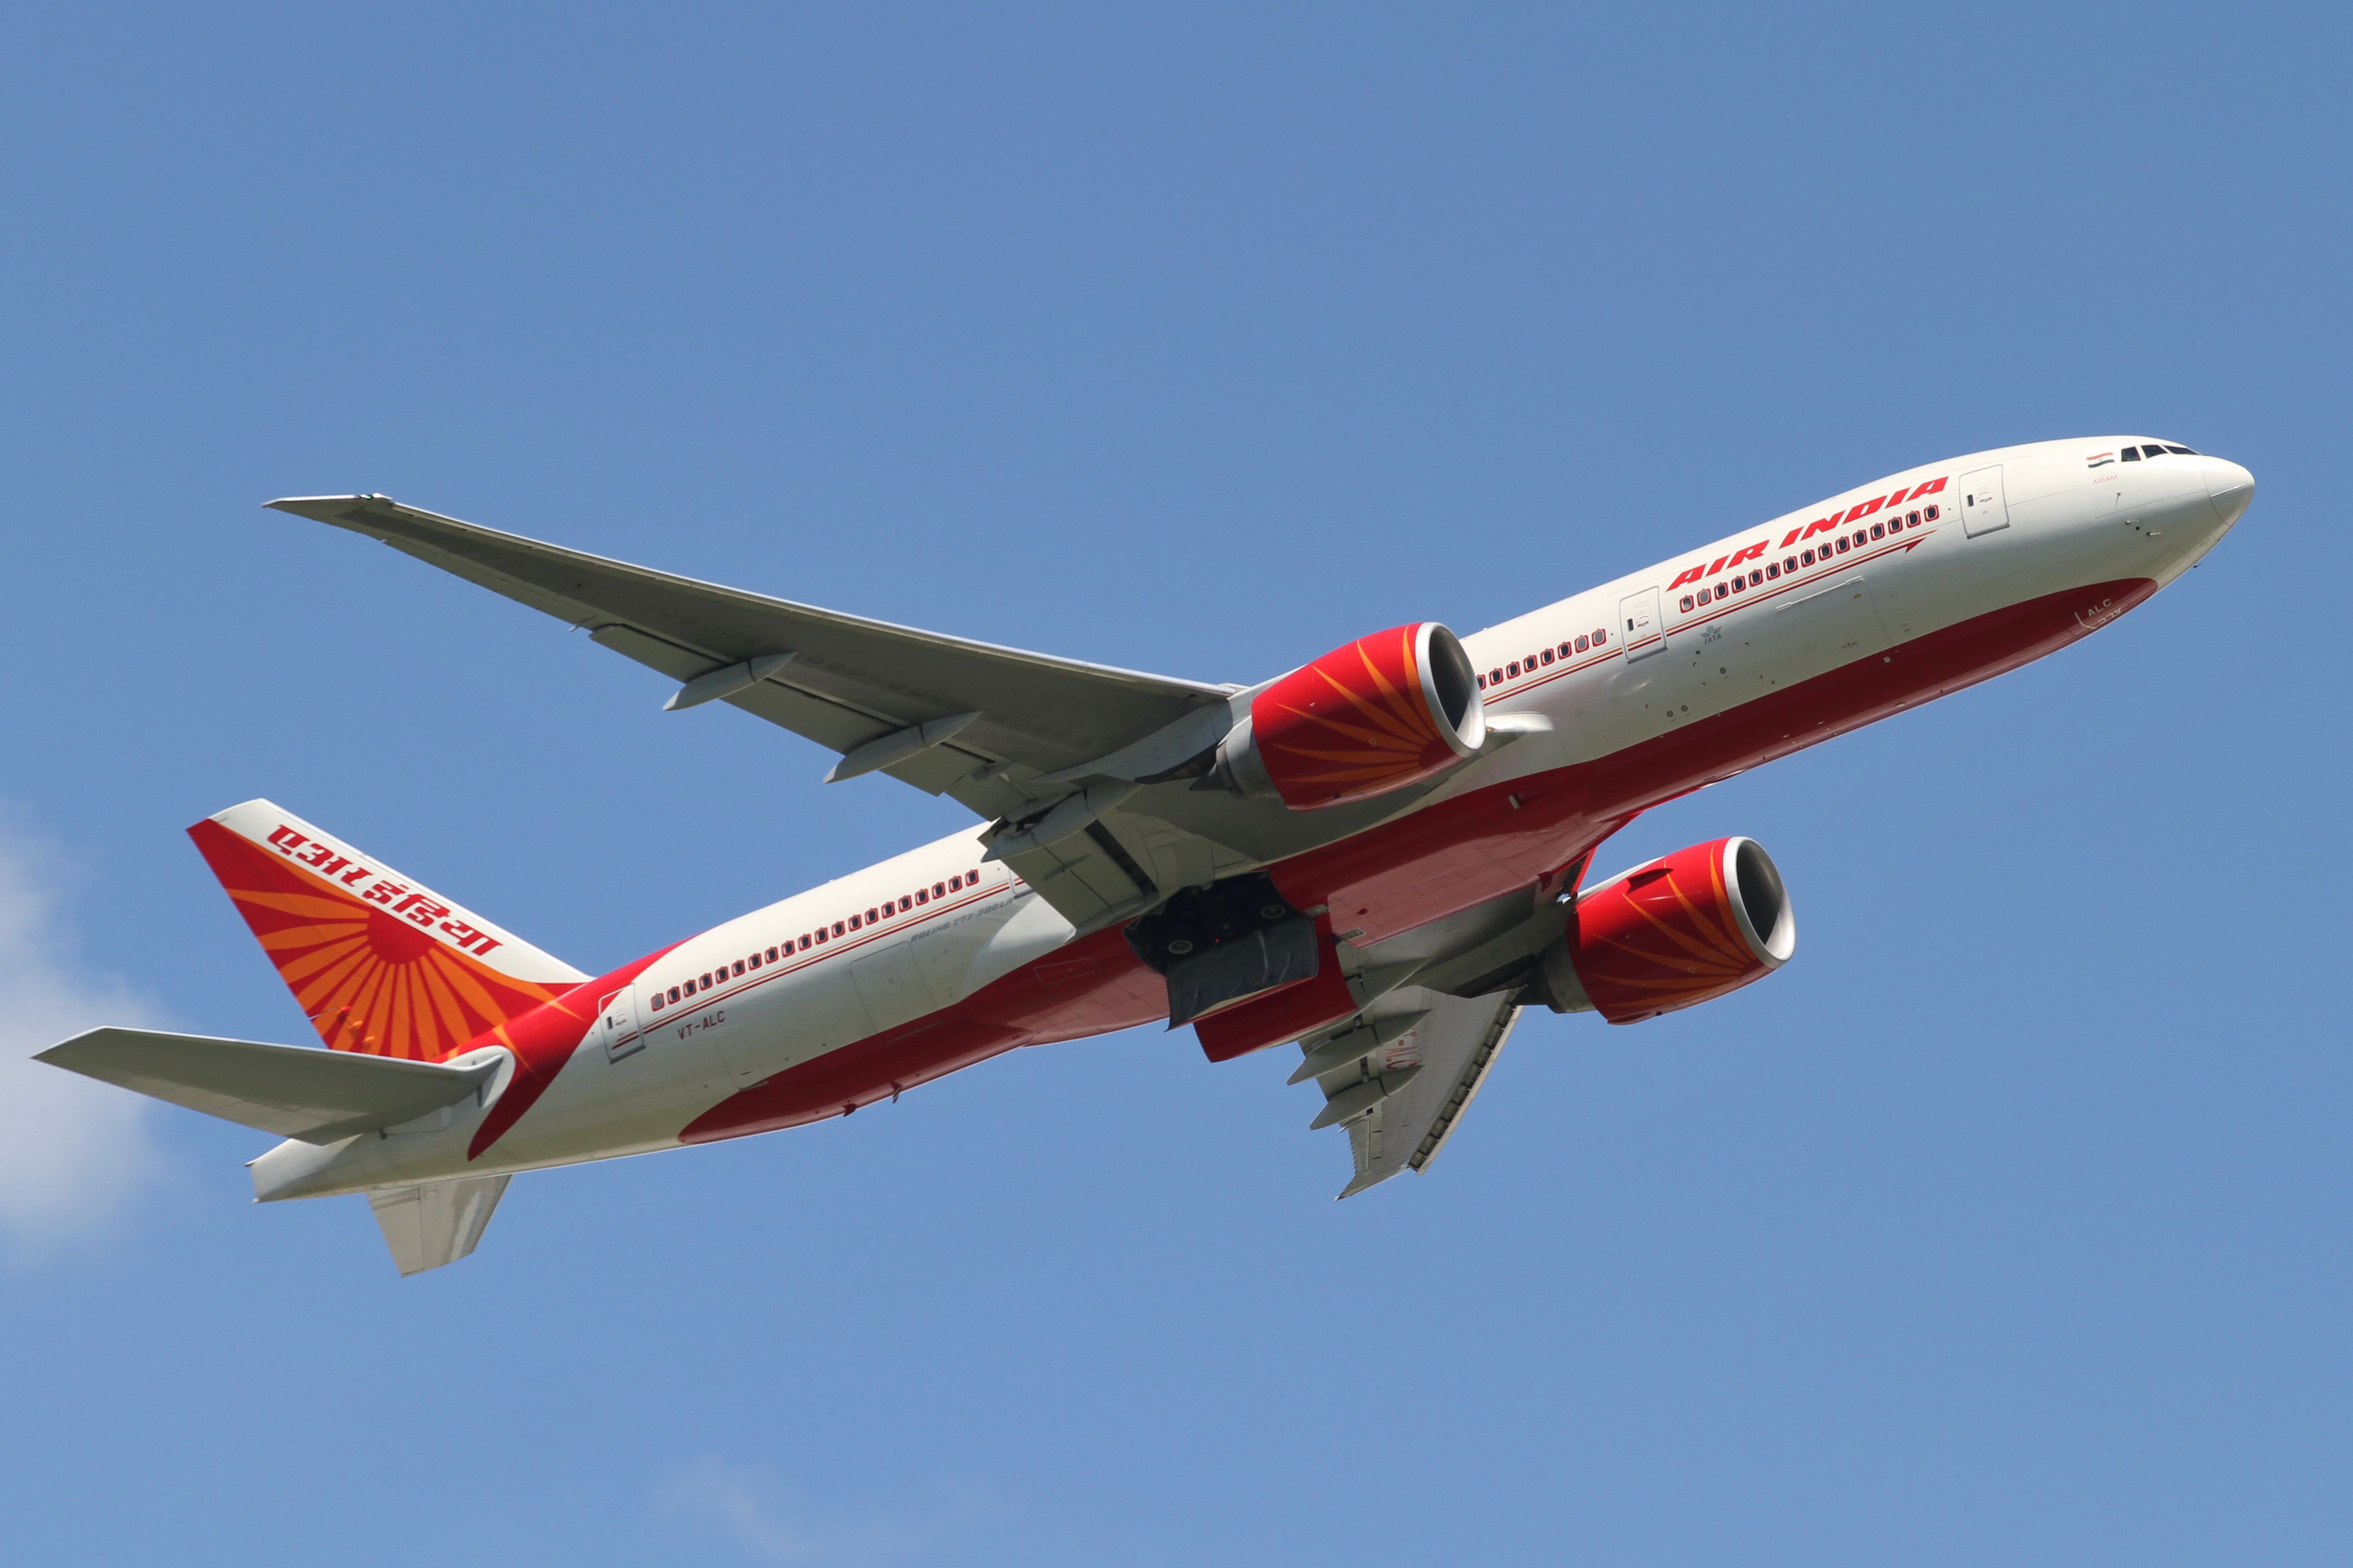 Air India Boeing 777-200LR